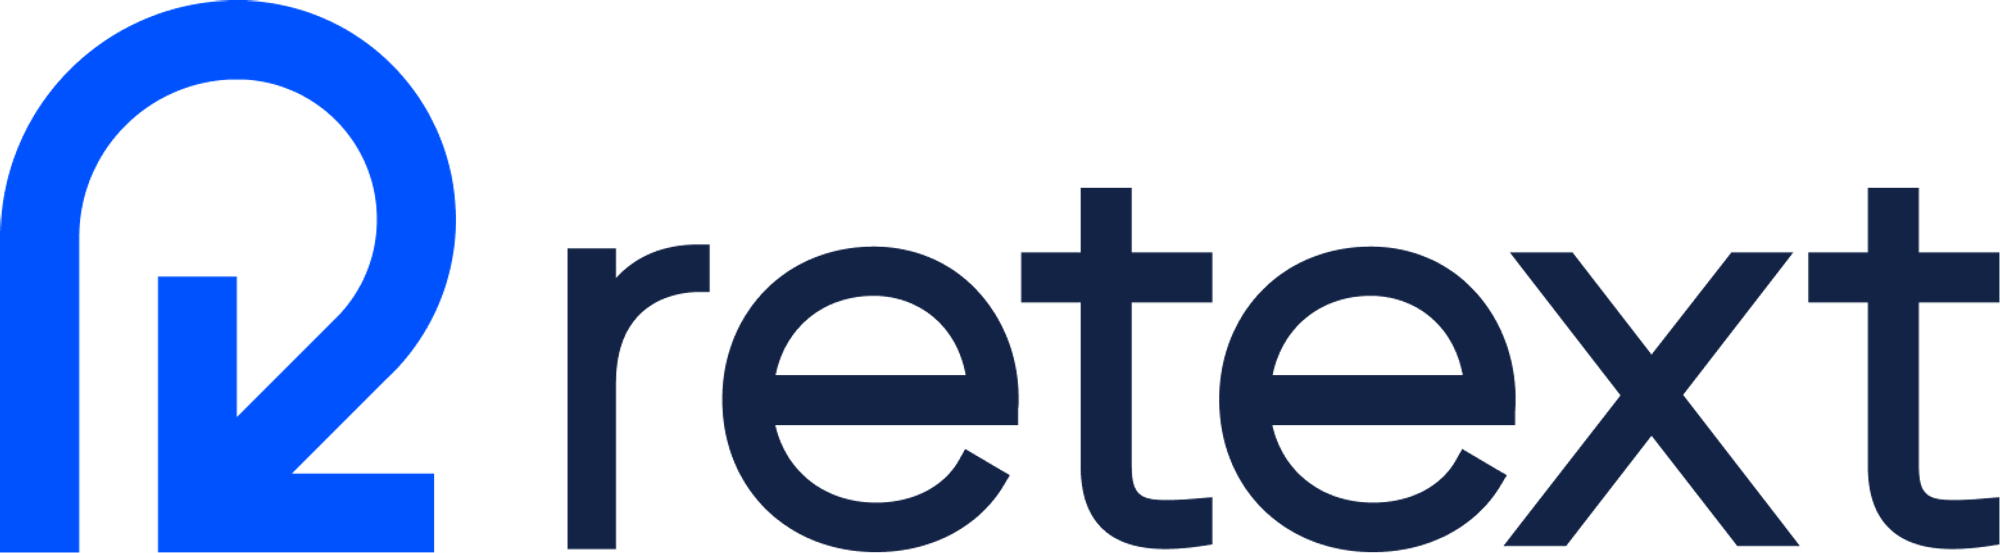 retext.io Logo